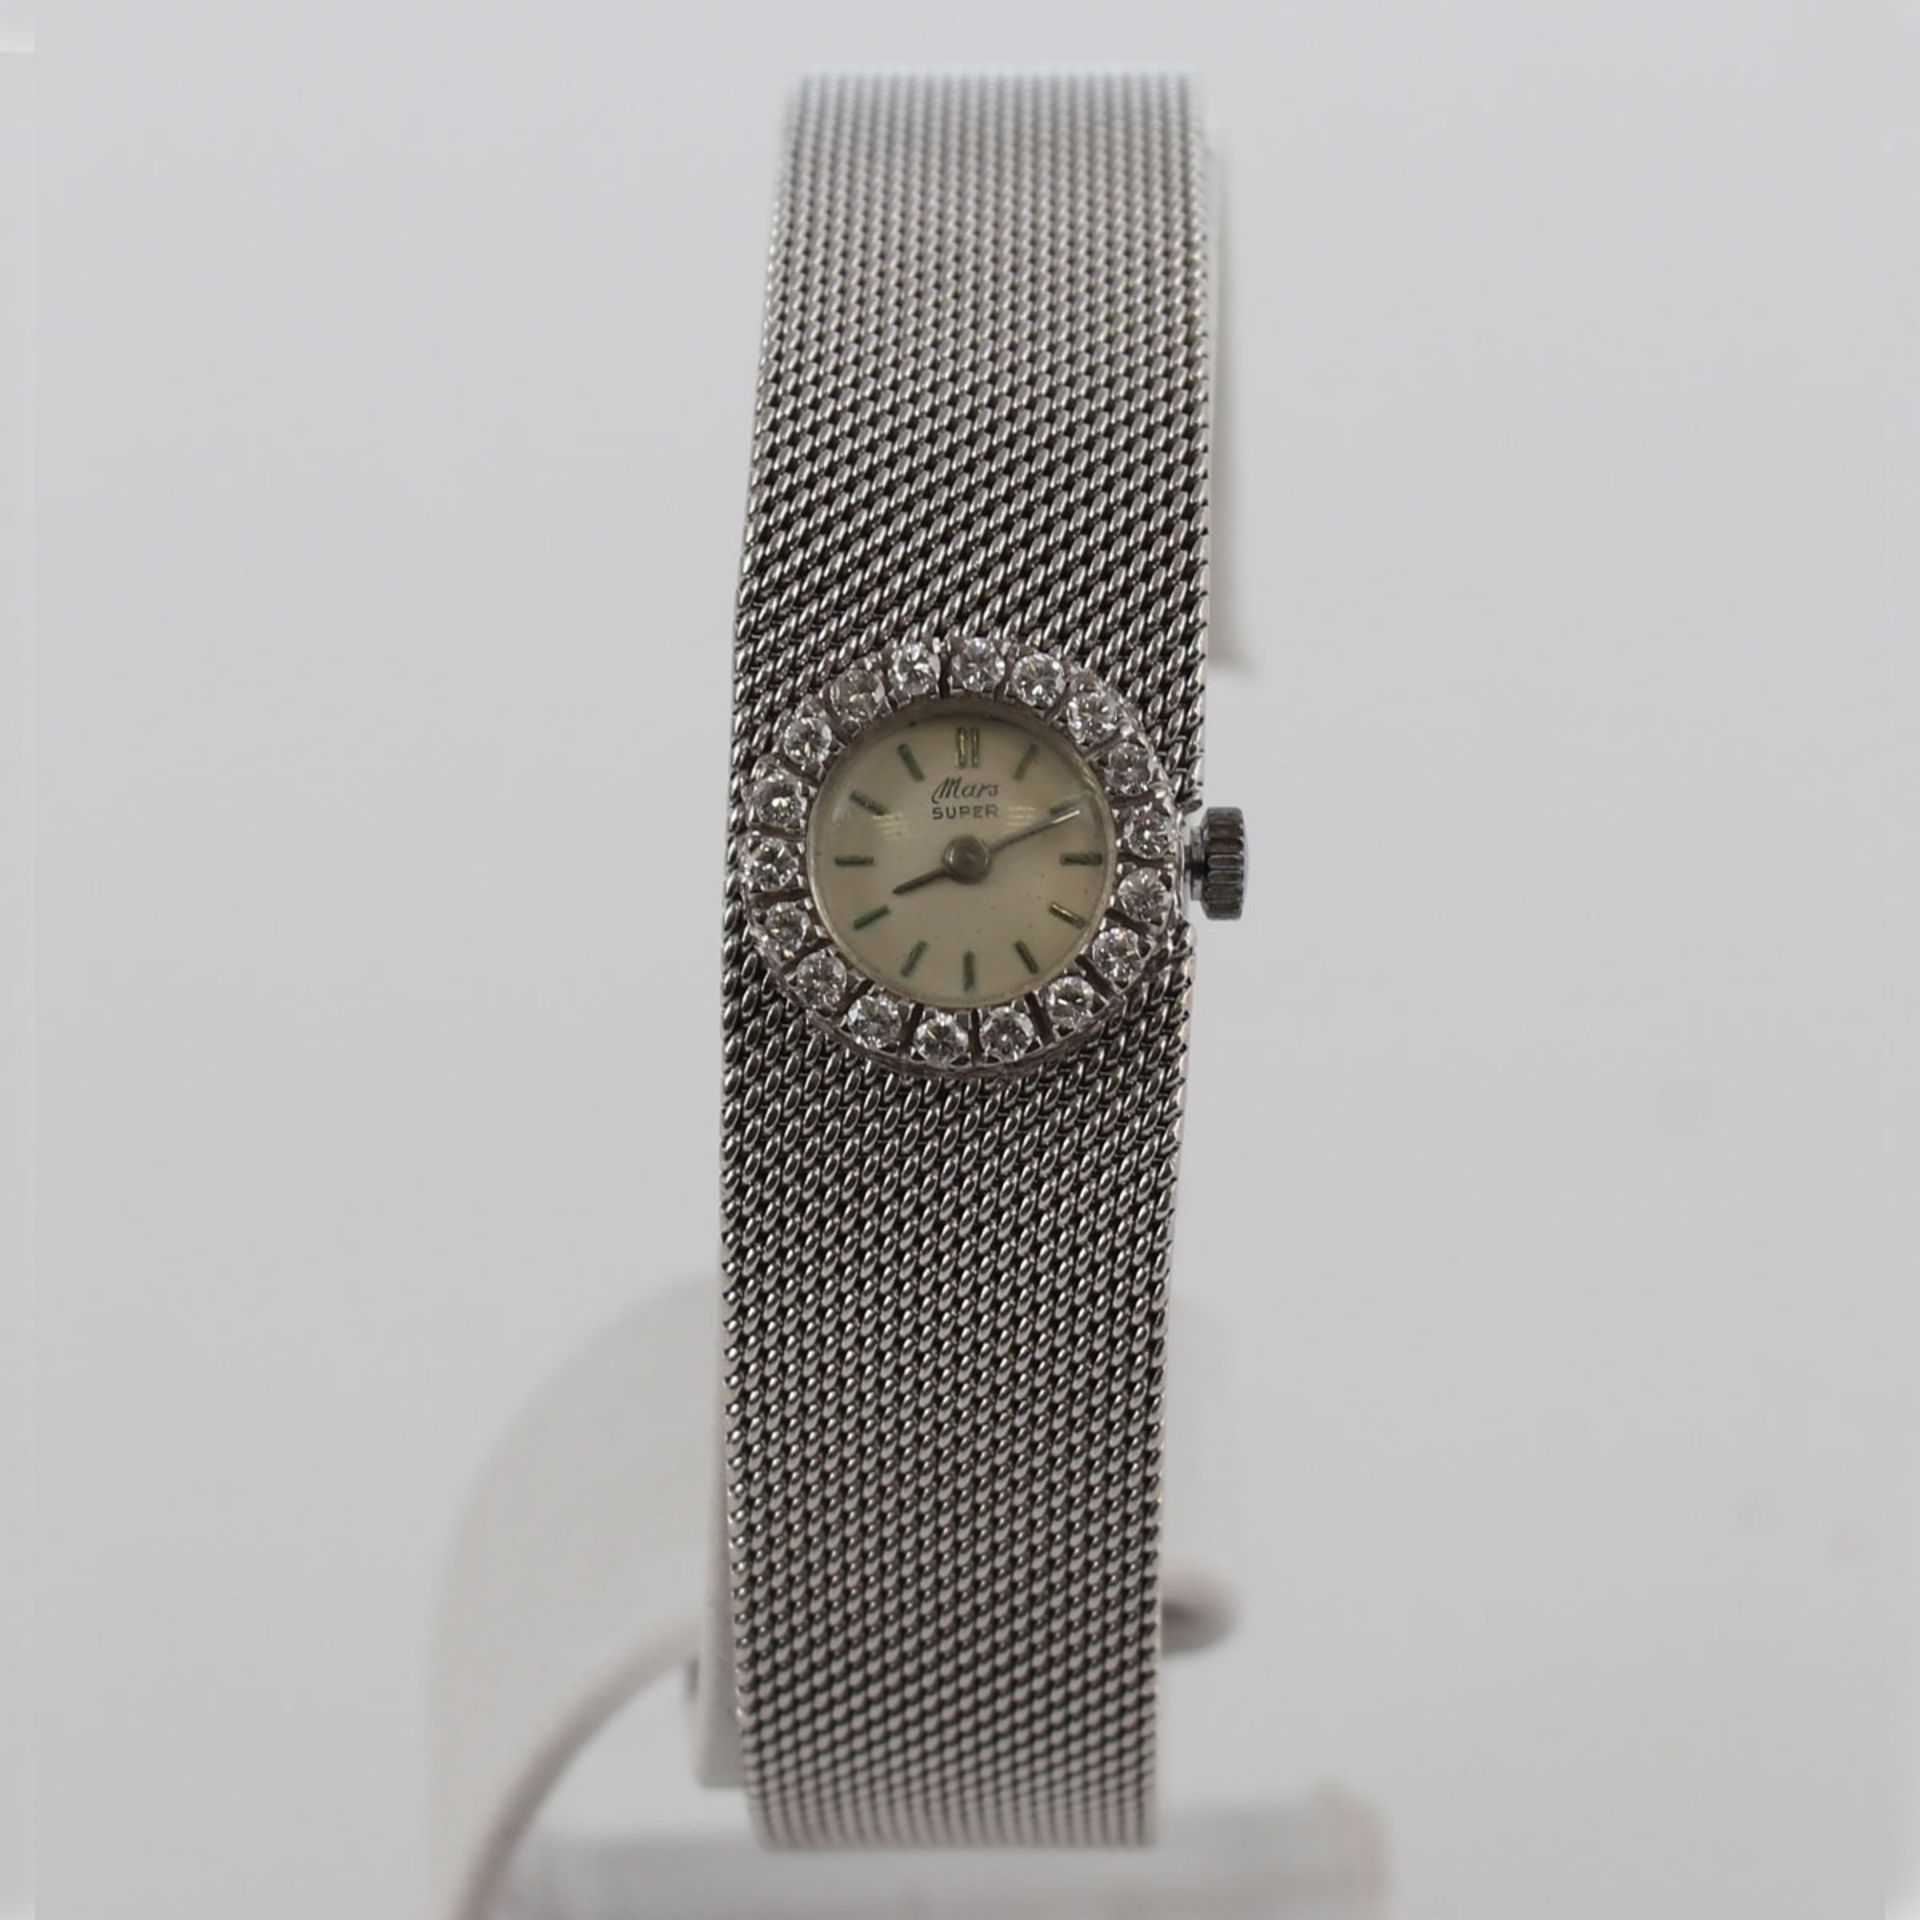 Weißgold-Armbanduhr mit Brillanten585/- Weißgold, gestempelt. Gewicht: 43,9 g. 18 Brillante